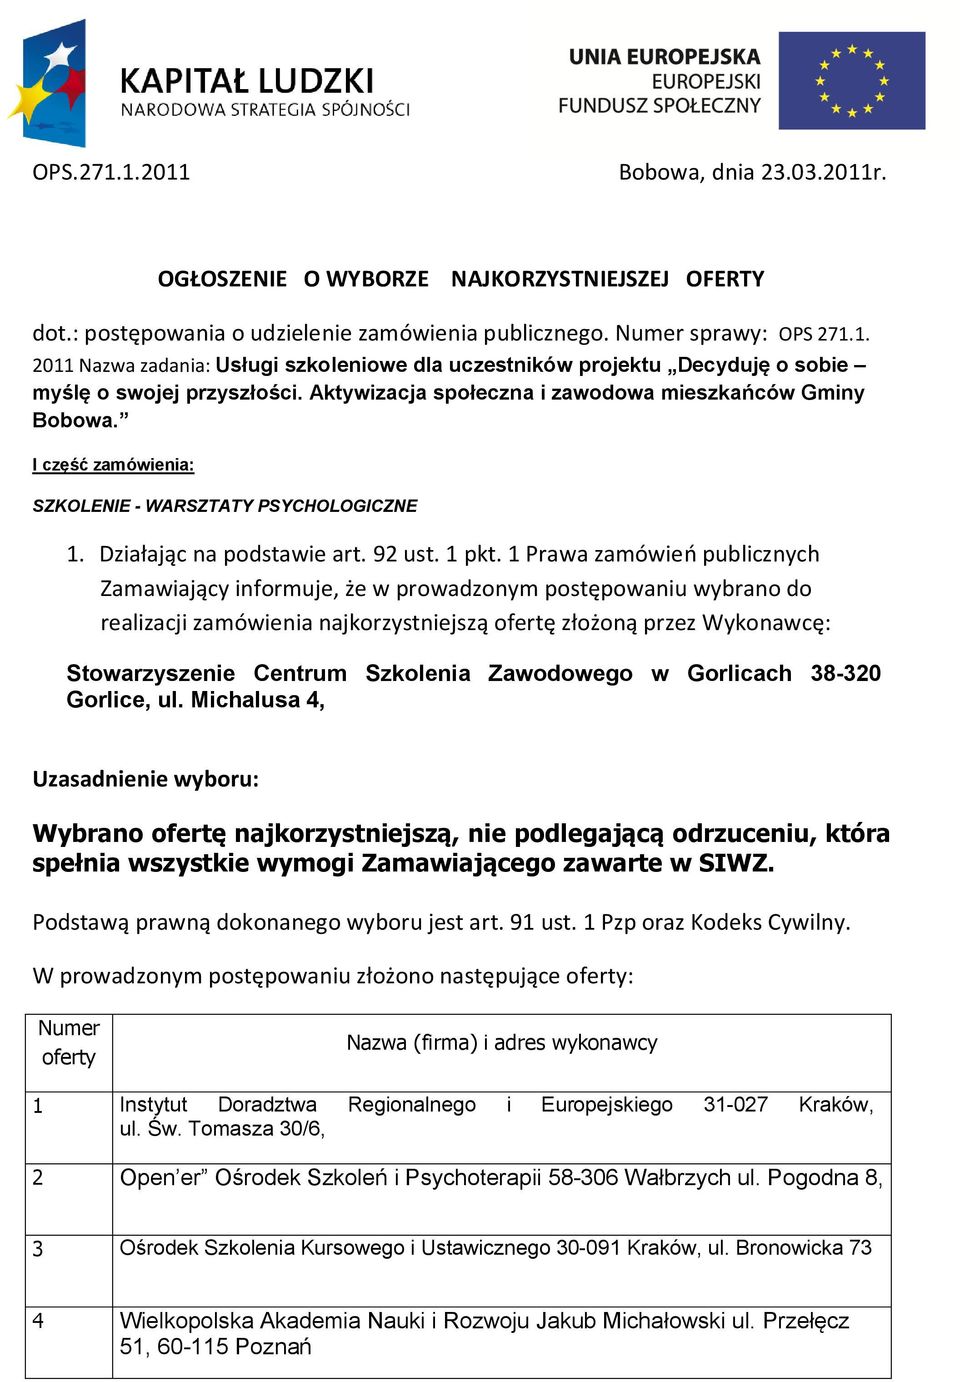 Zawodowego w Gorlicach 38-320 Gorlice, ul. Michalusa 4, Wybrano ofertę najkorzystniejszą, nie podlegającą odrzuceniu, która spełnia wszystkie wymogi Zamawiającego zawarte w SIWZ.